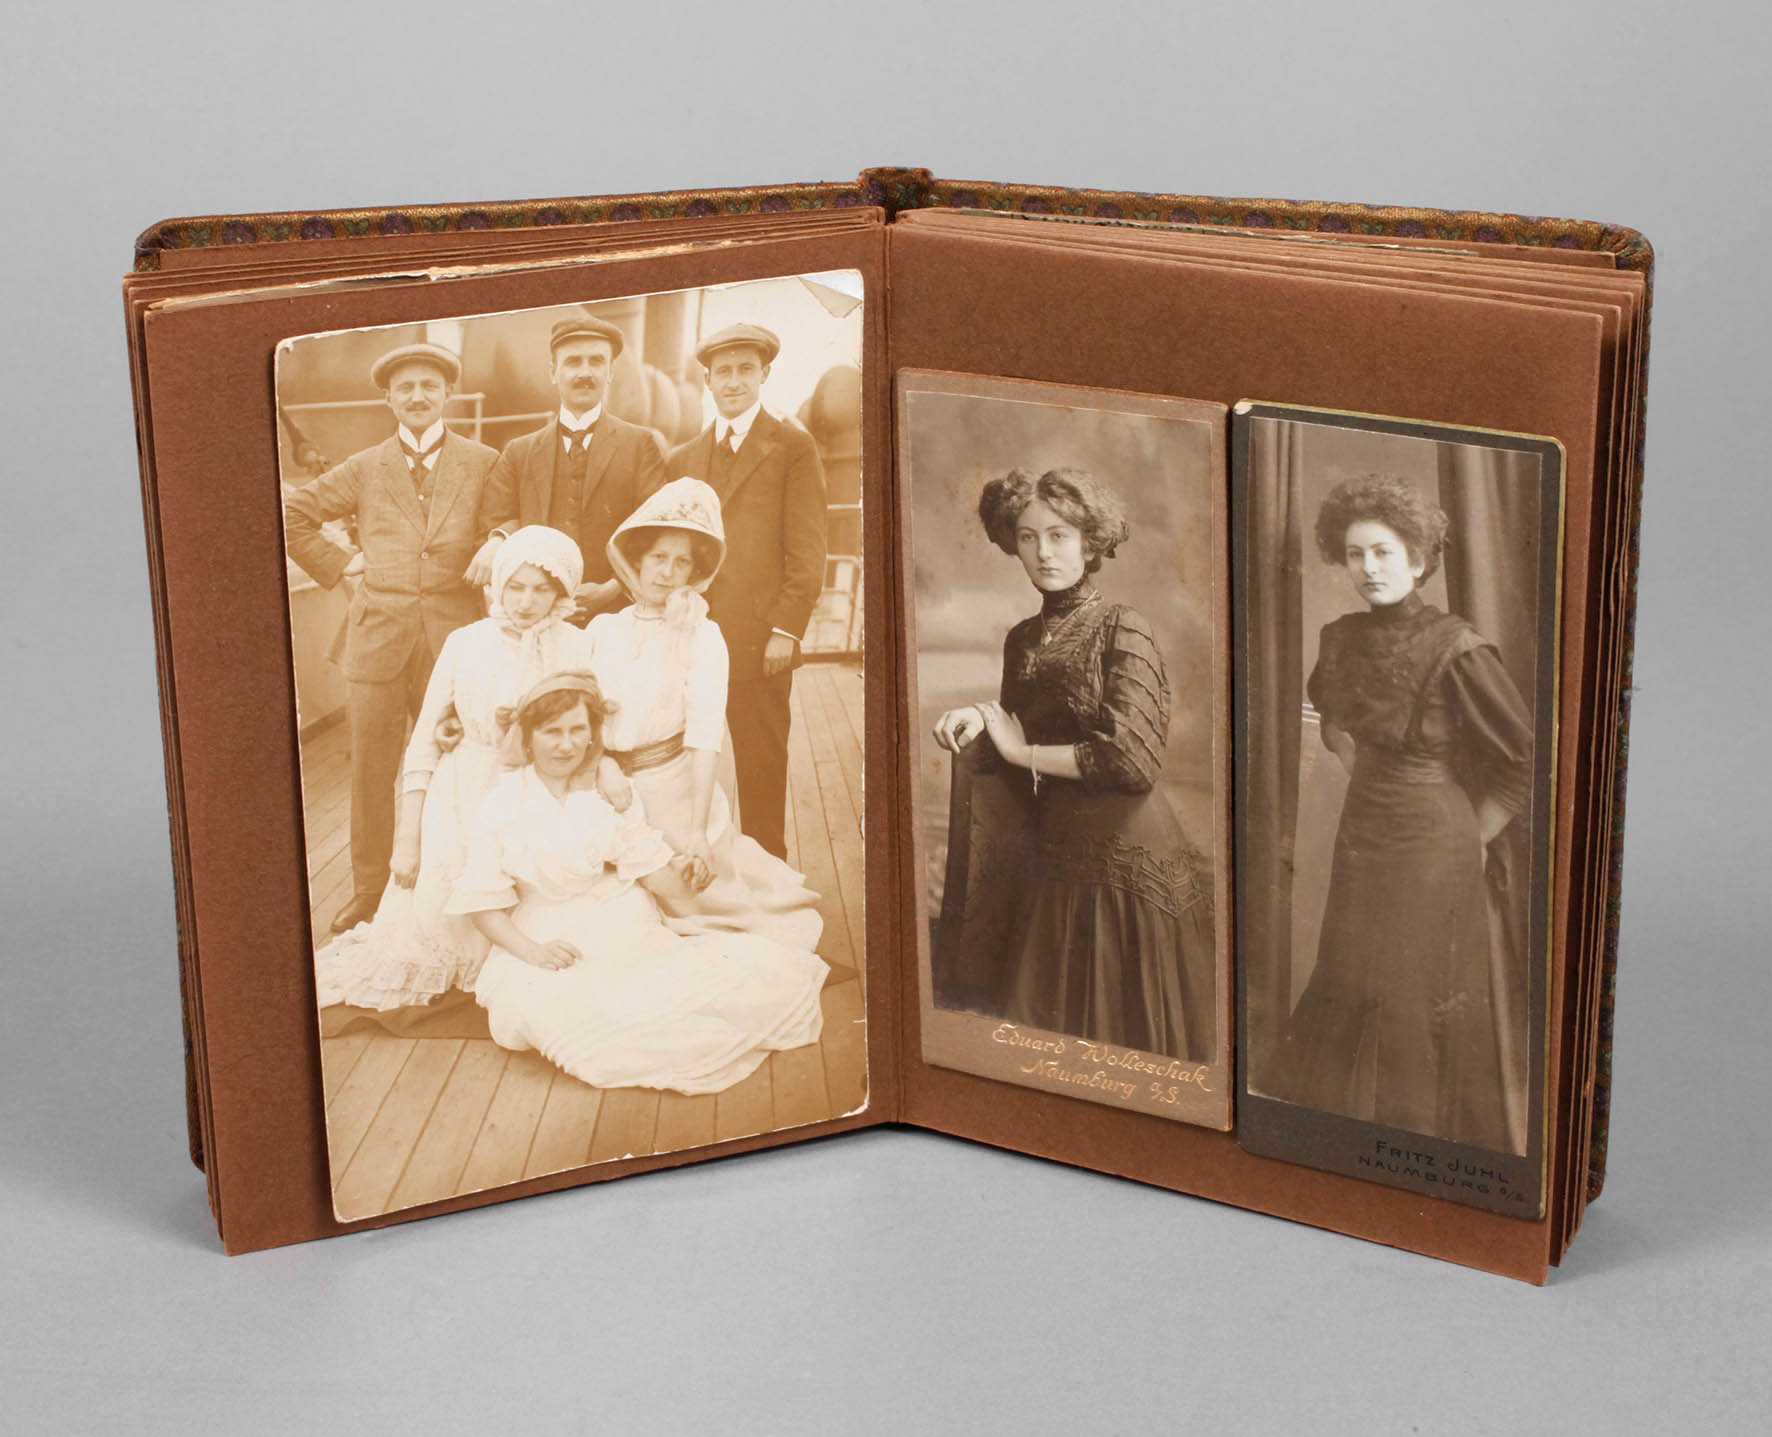 Fotoalbum einer Naumburger Familie, um 1910, ca. 25 montierte Portraitaufnahmen, meist Frauen in